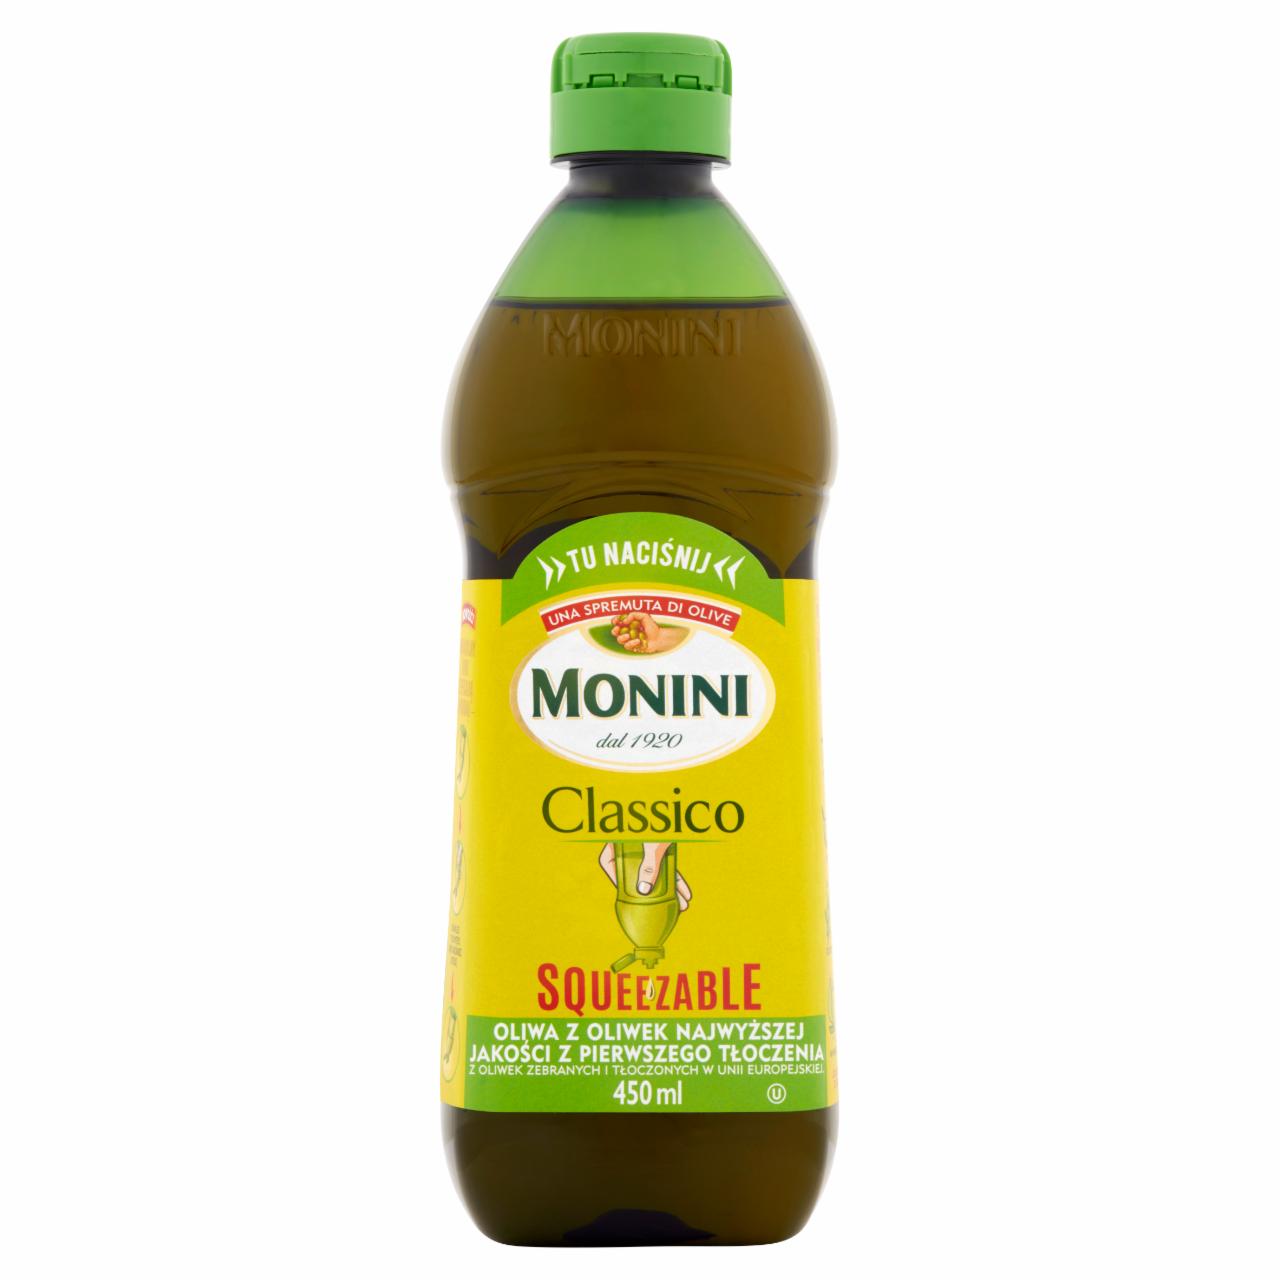 Zdjęcia - Monini Classico Squeezable Oliwa z oliwek najwyższej jakości z pierwszego tłoczenia 450 ml